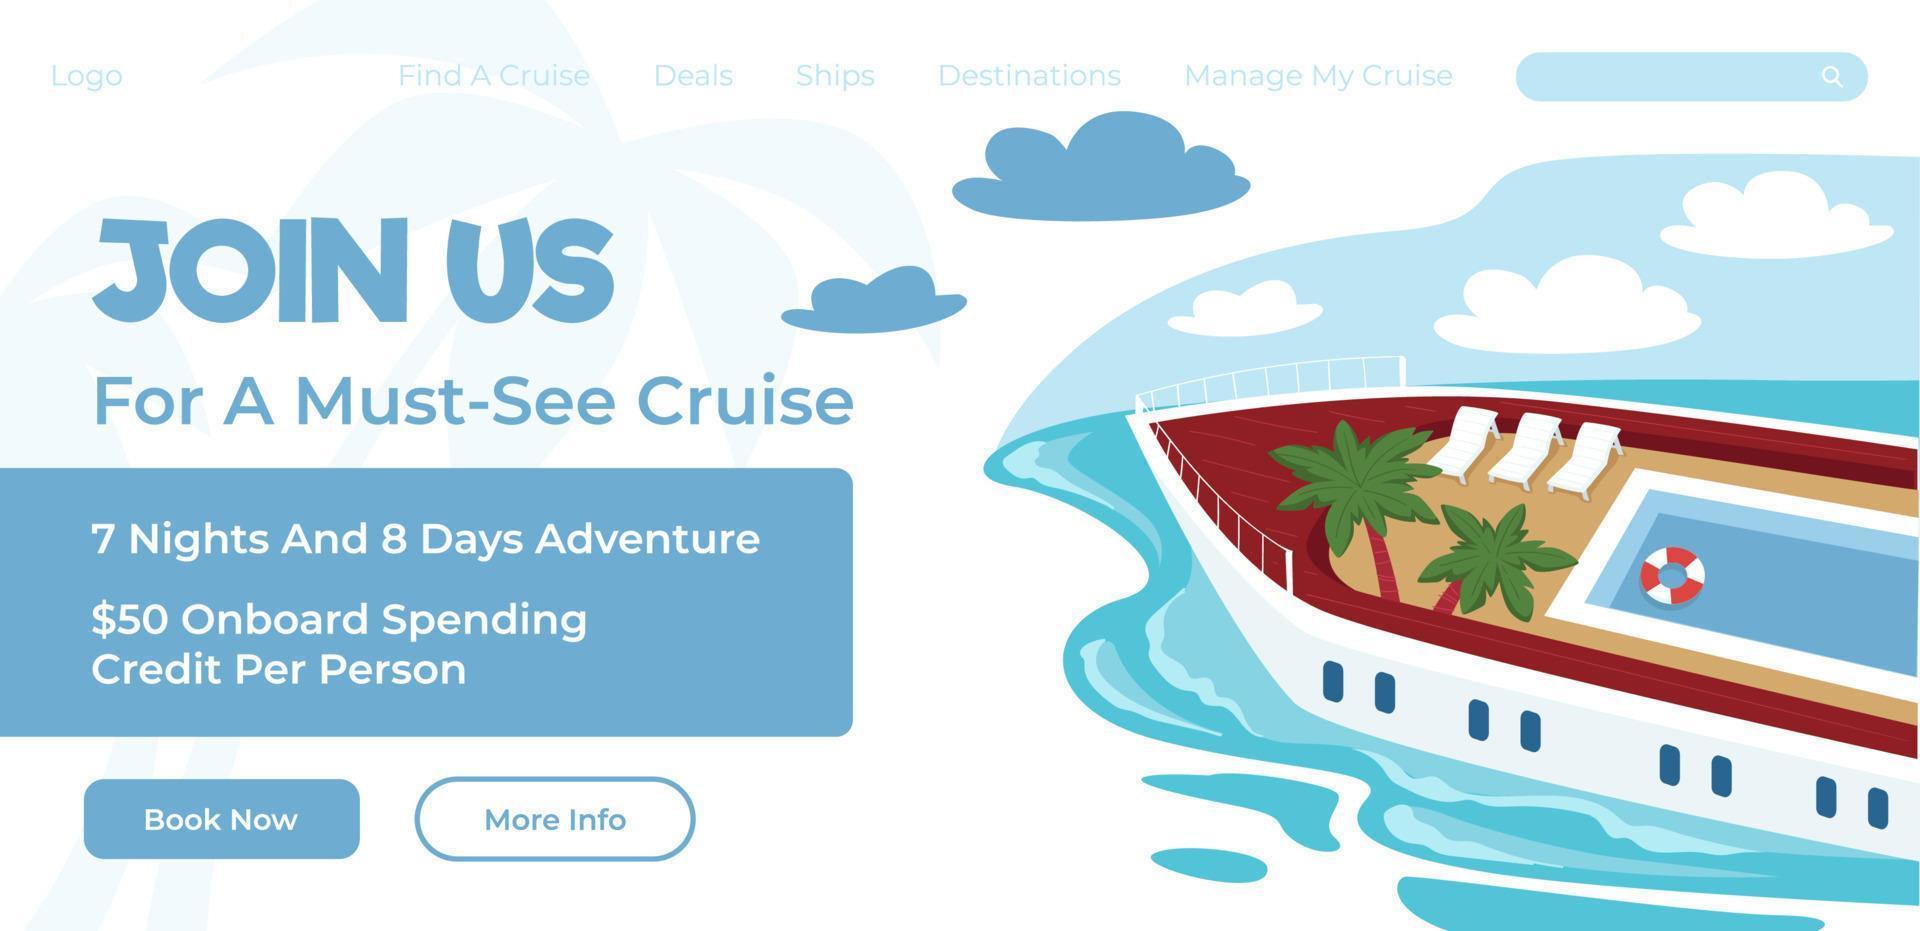 toetreden ons voor moet zien cruise, website online bladzijde vector